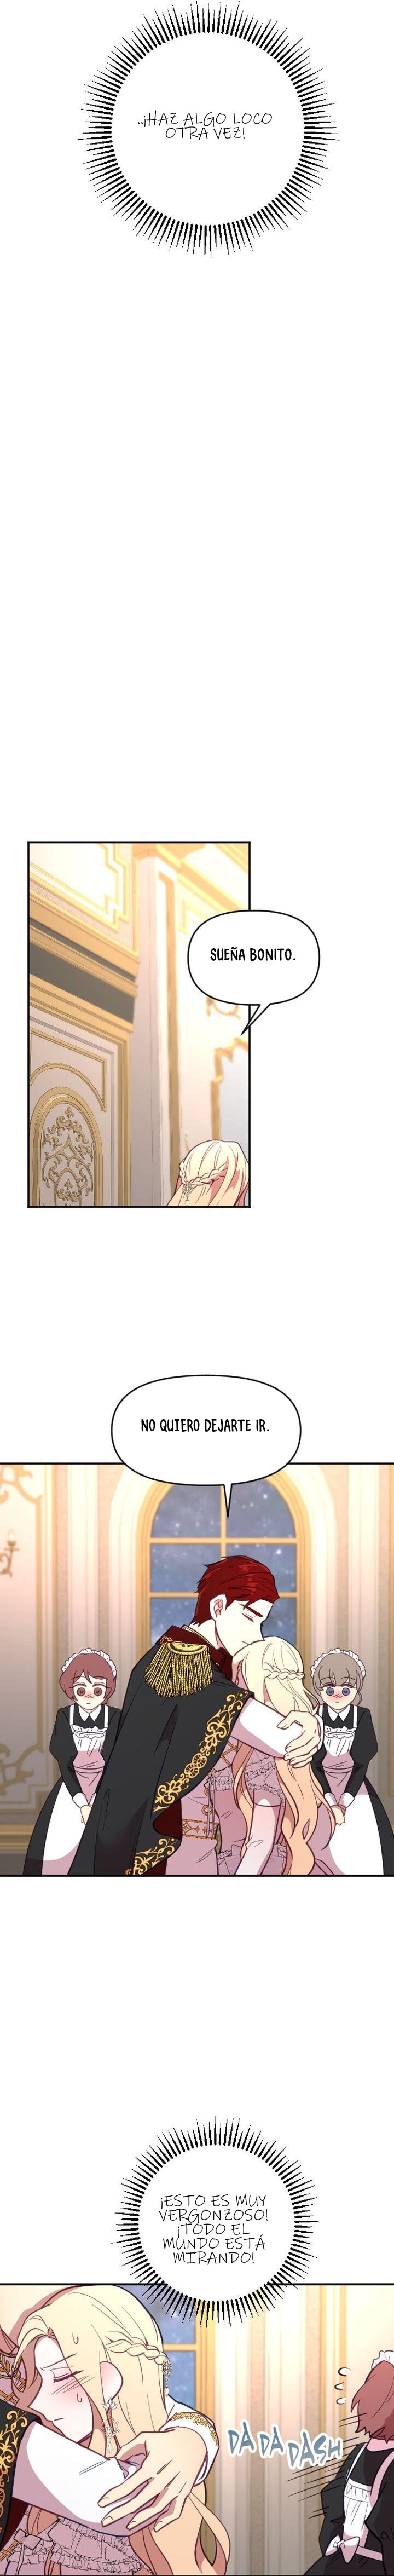 Manga Plantando un corazon al emperador Chapter 17 image number 15